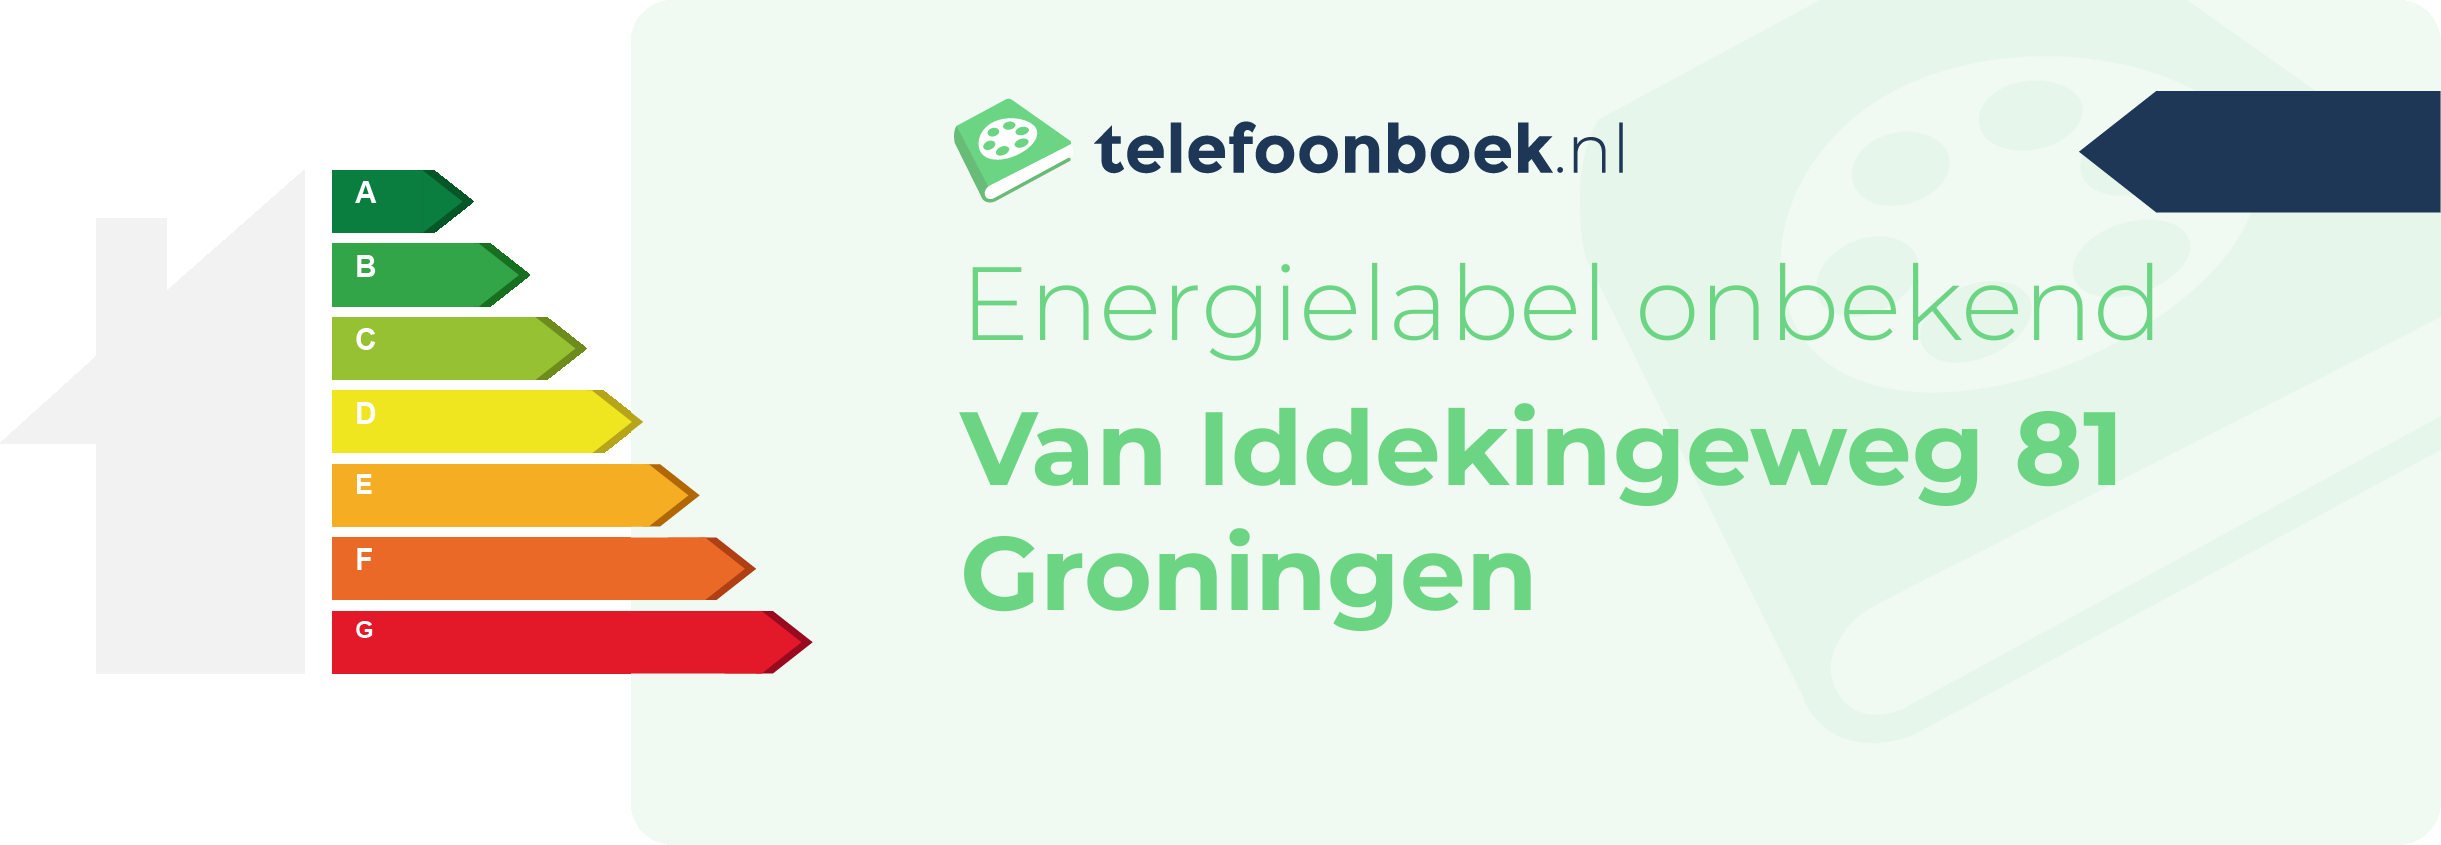 Energielabel Van Iddekingeweg 81 Groningen